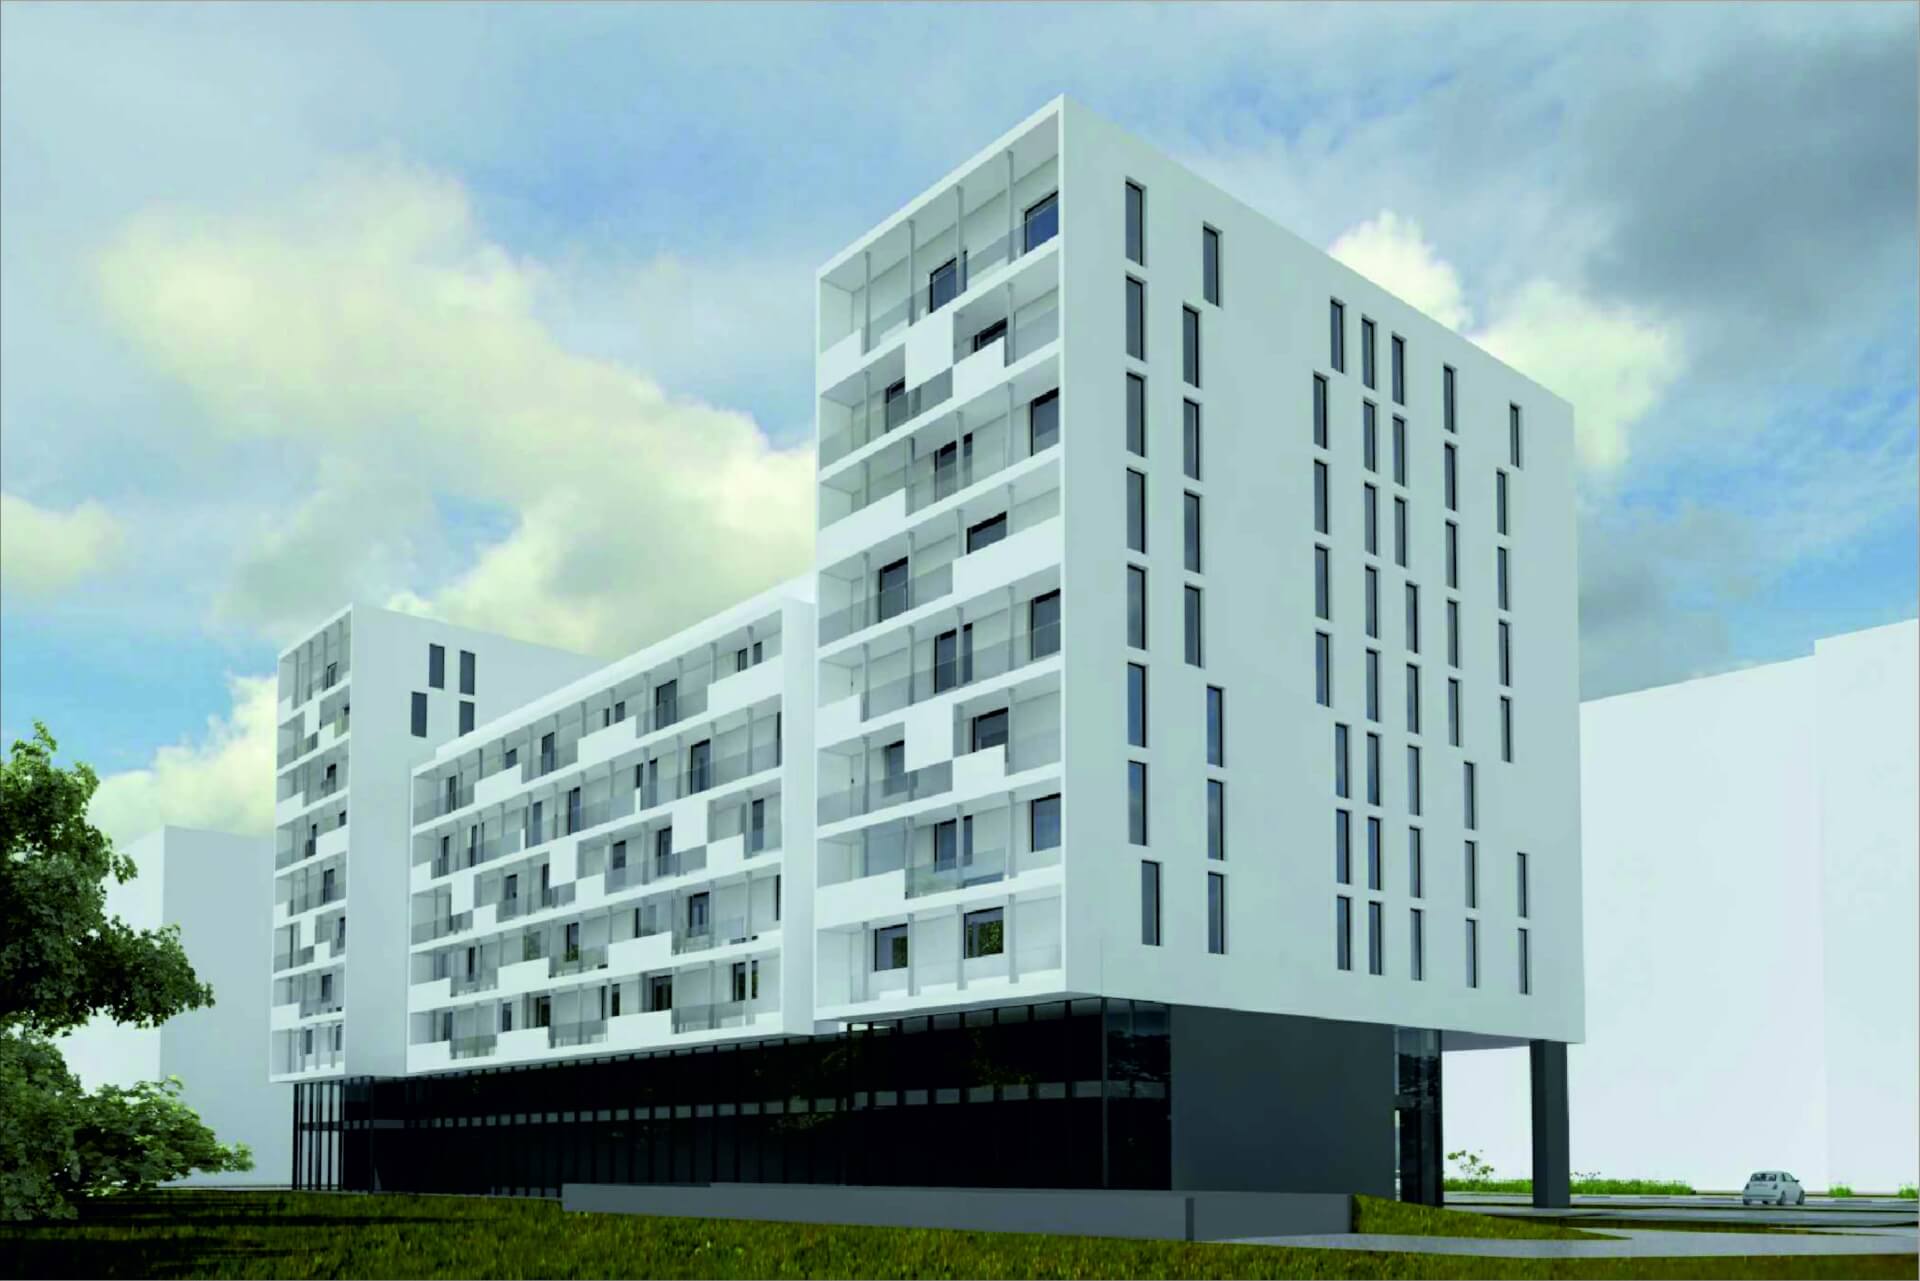 KTBS wizualizacja nowego budynku przy Kosstuha w Katowicach